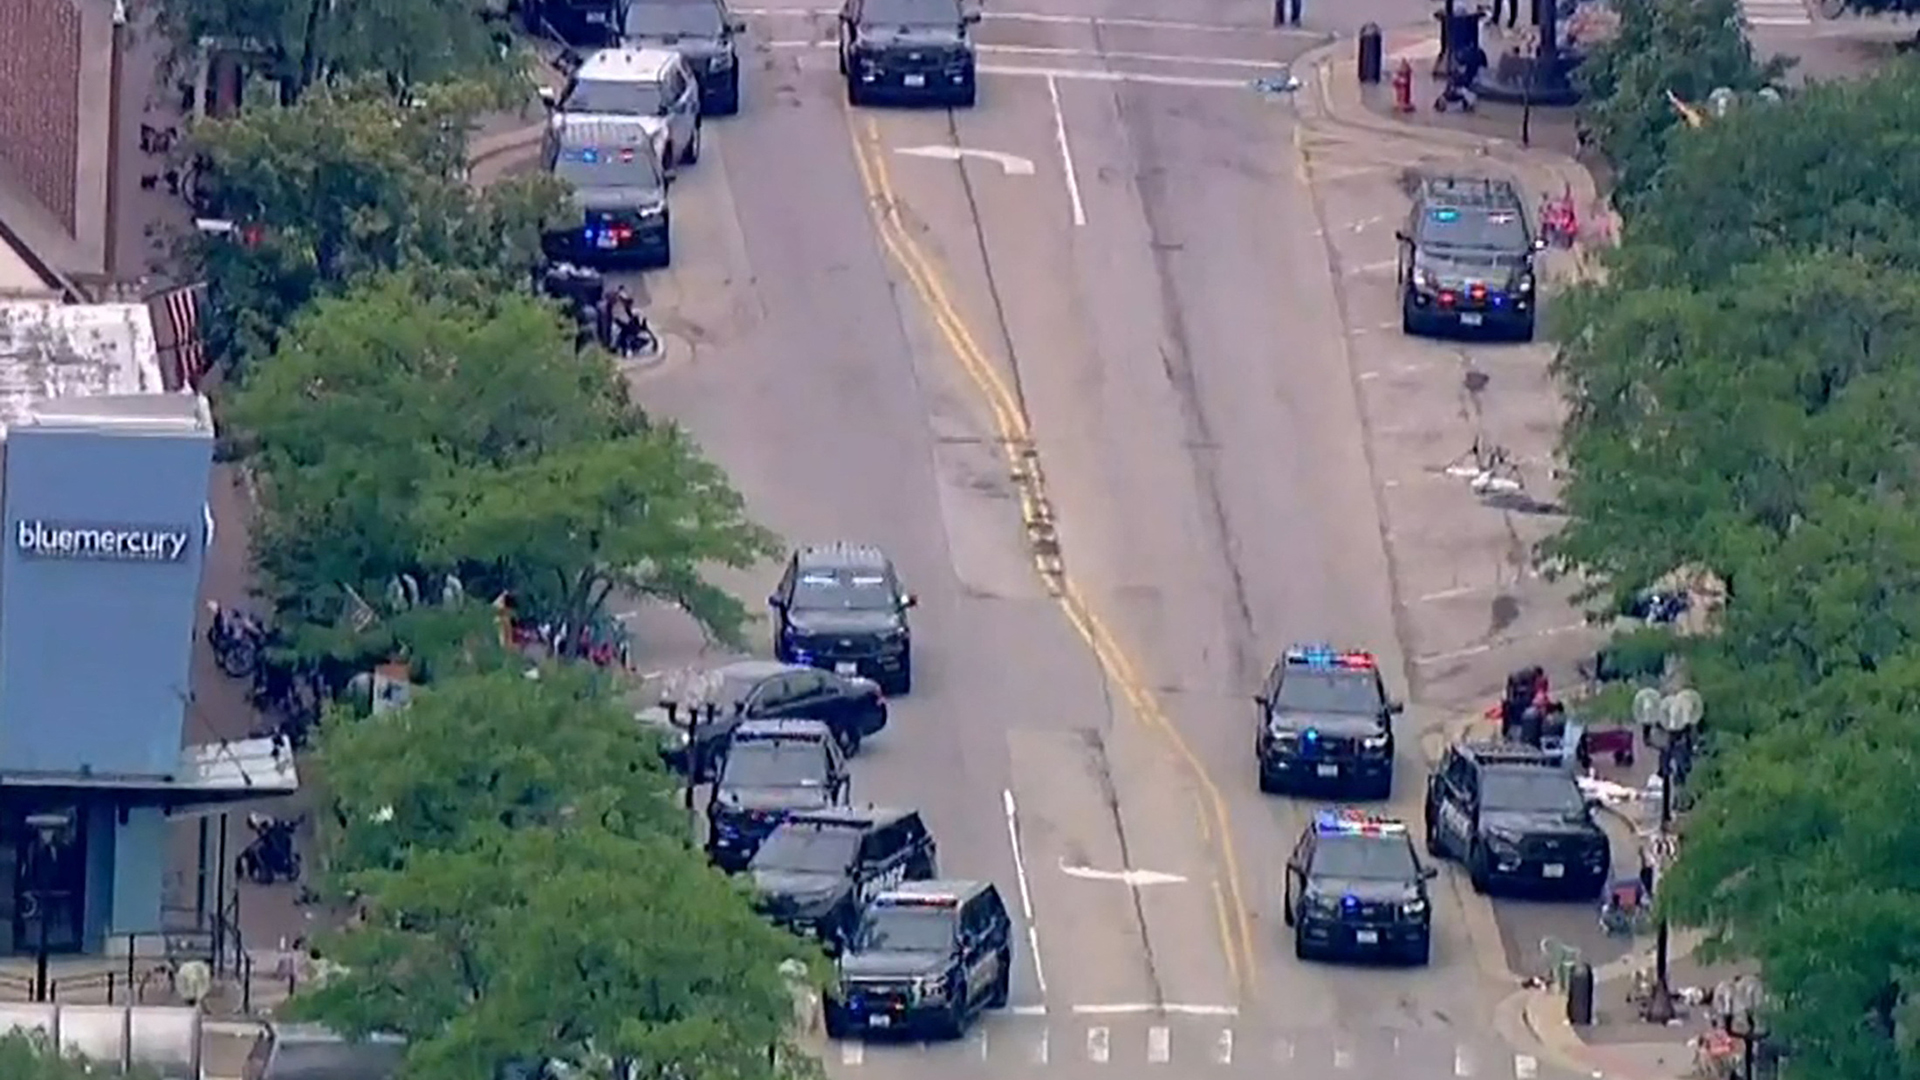 Luftaufnahme von Polizeiwagen auf einer Straße in einem Vorort von Chicago | via REUTERS